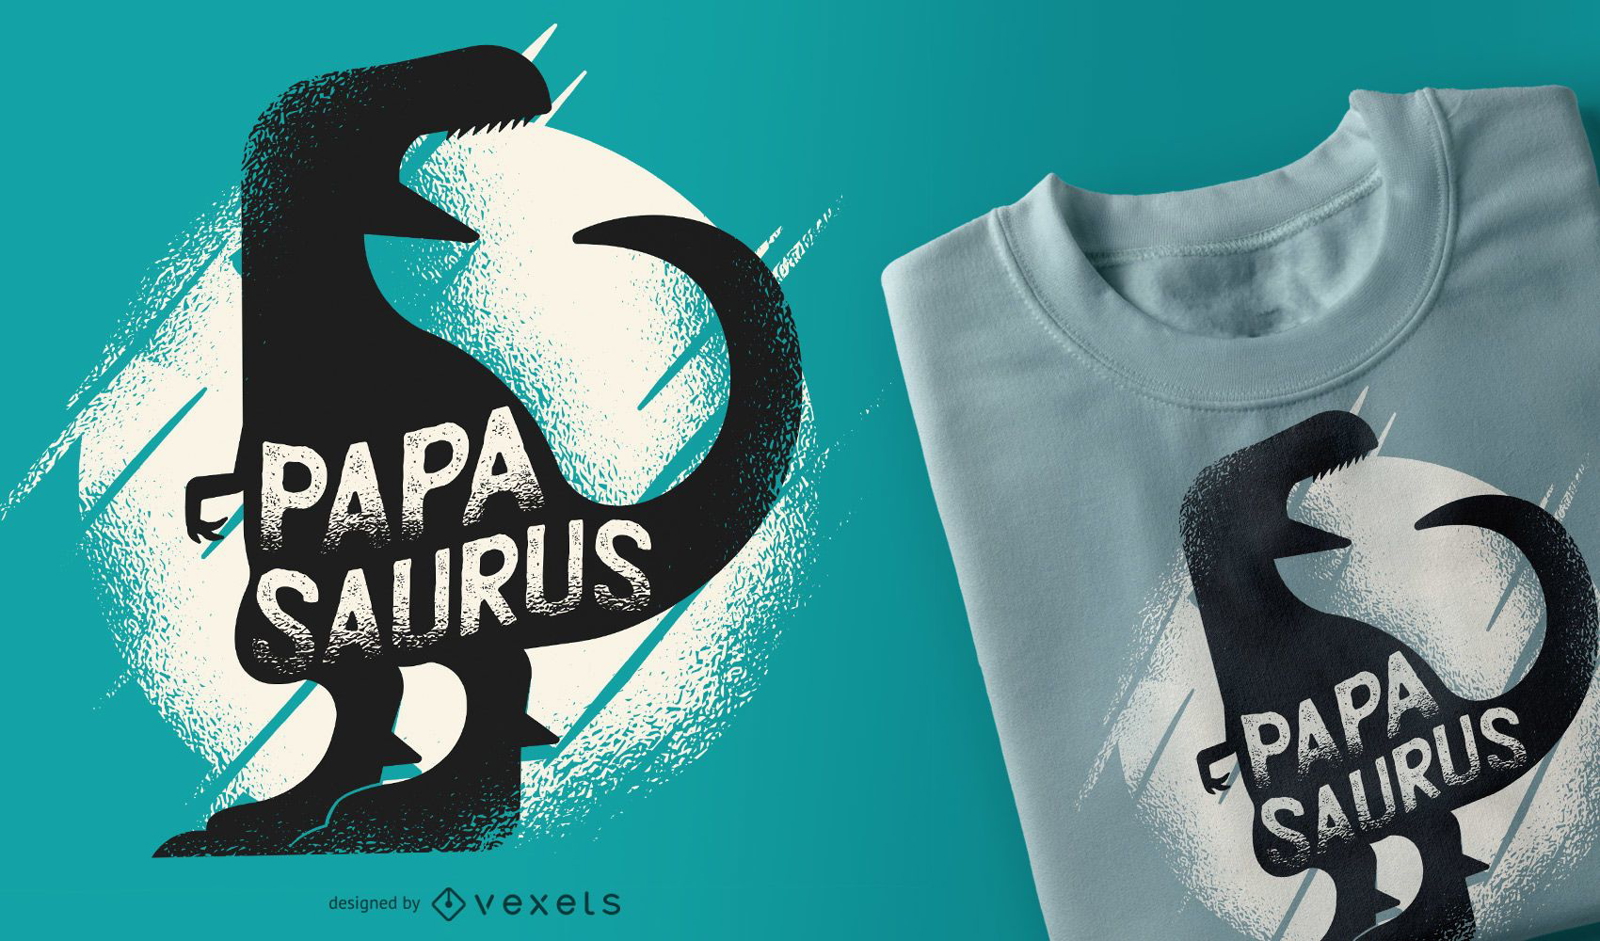 Papasaurus Rex Funny Dinosaur Dad T-shirt Design